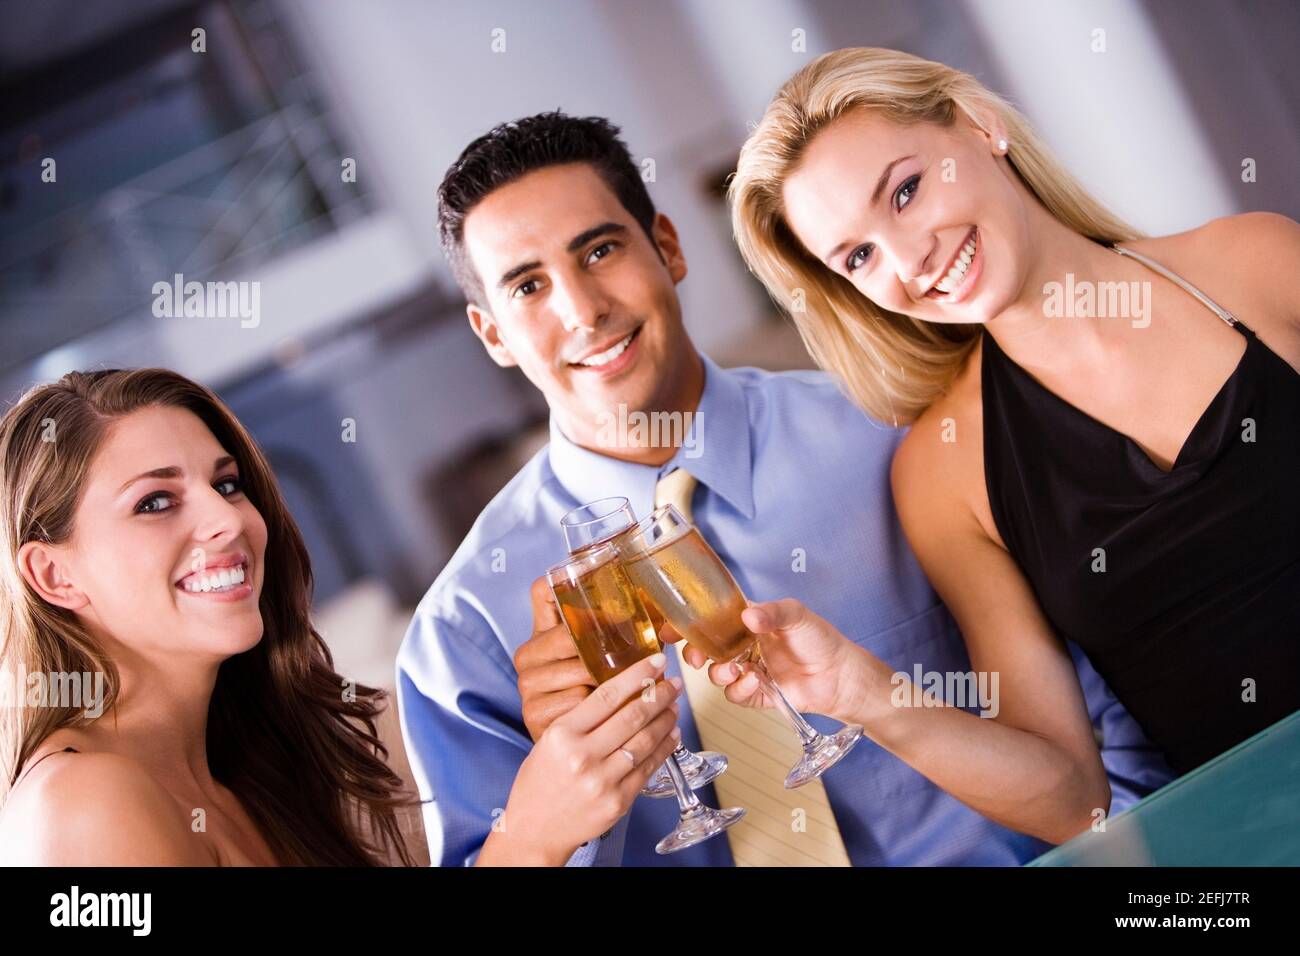 Retrato de un hombre adulto medio y dos mujeres jóvenes levantar una tostada Foto de stock